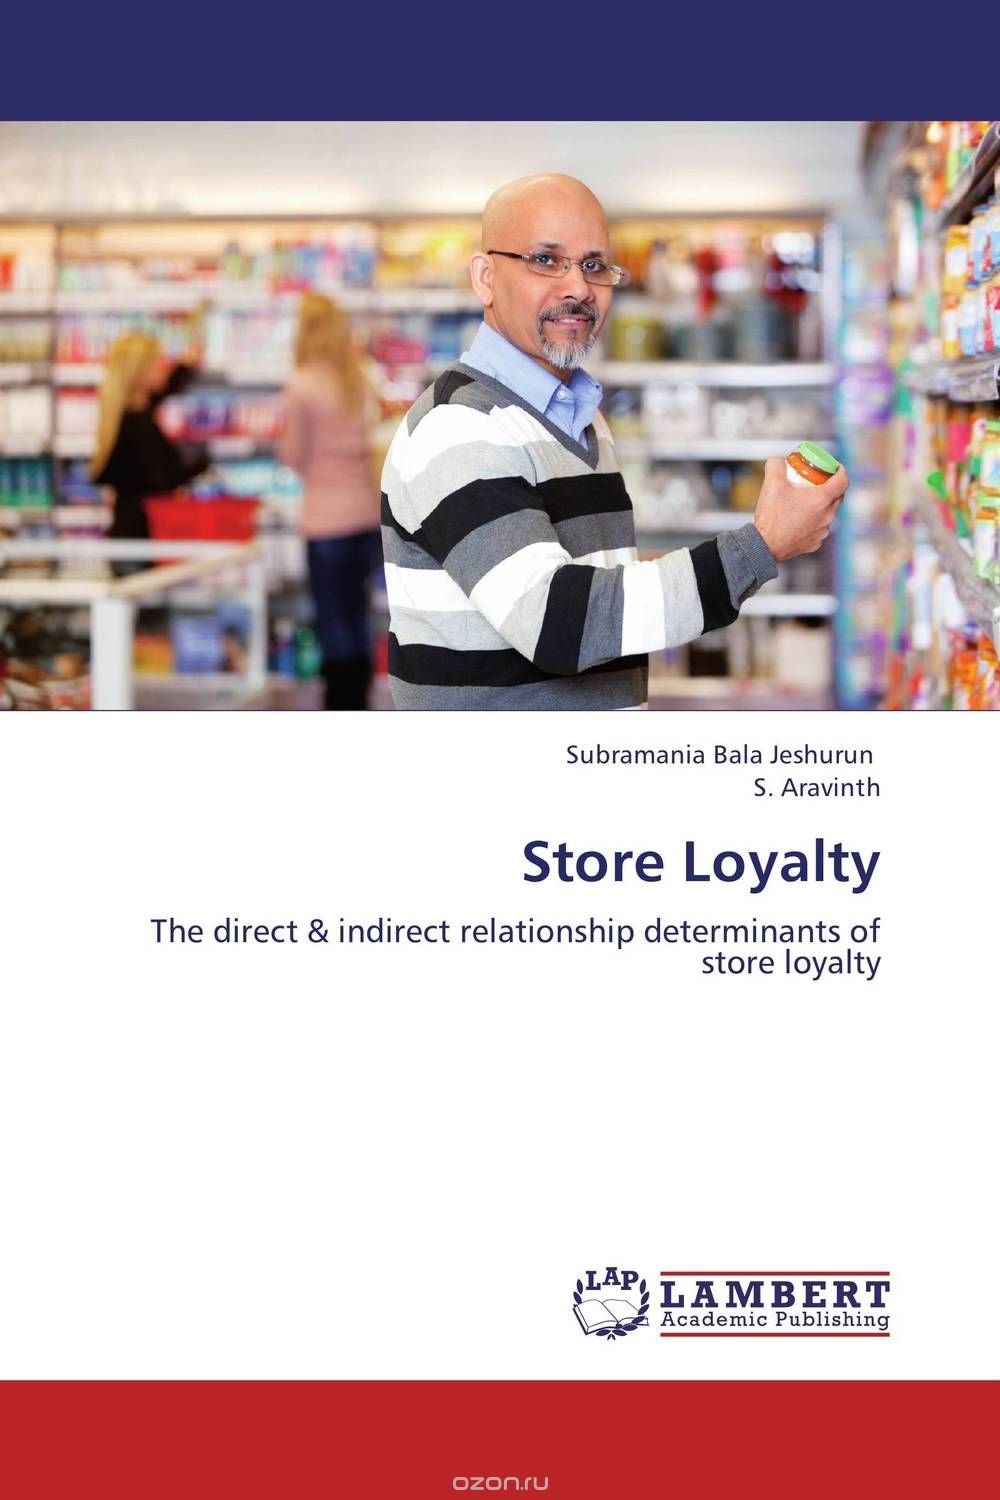 Скачать книгу "Store Loyalty"